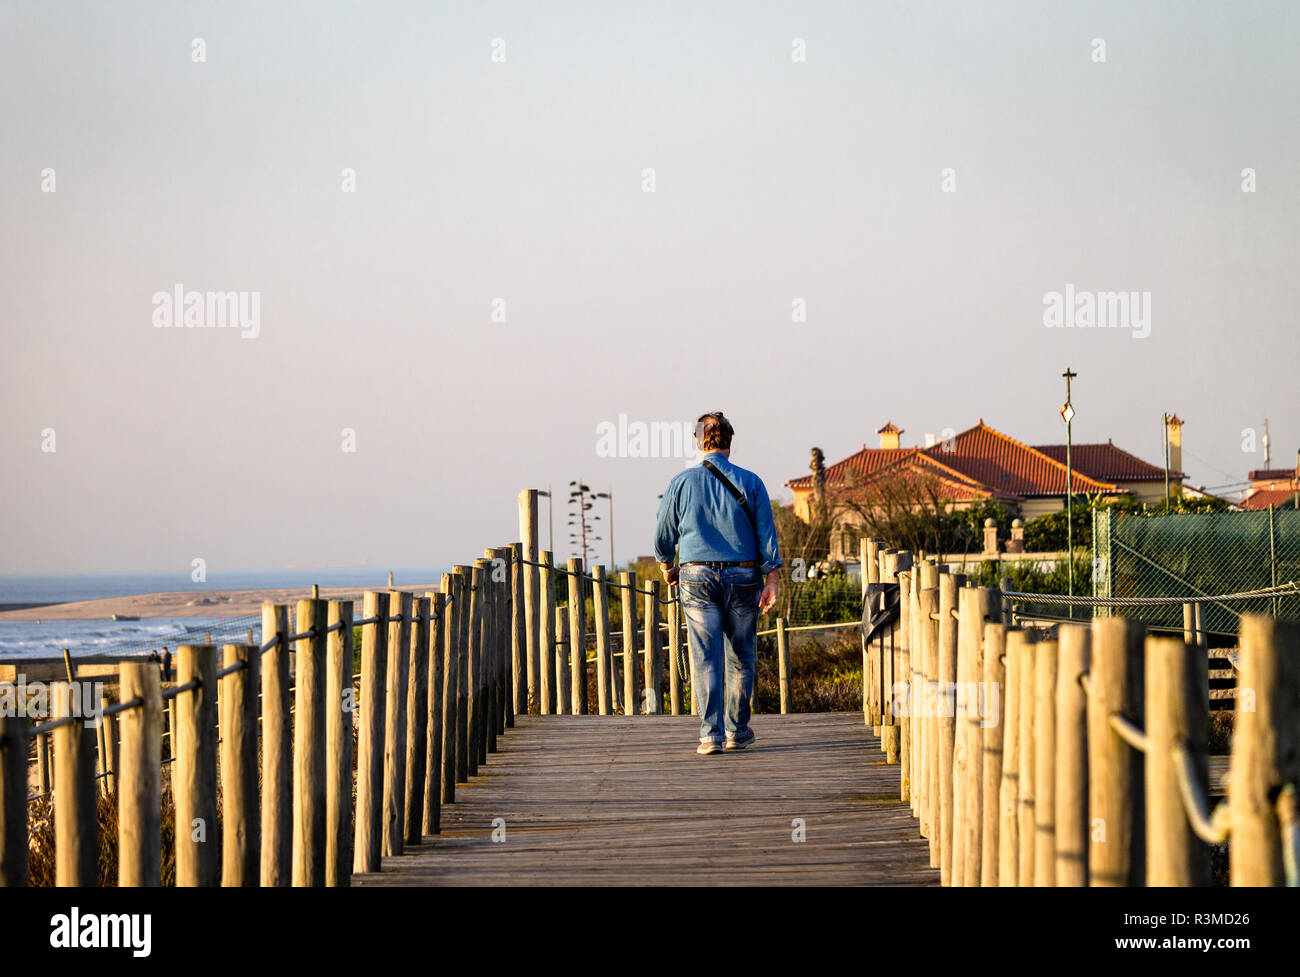 Mann mittleren Alters Spaziergänge auf der Promenade in der Nähe des Meeres. Blaues T-Shirt, Jeans. Ansicht von hinten. Häuser in der Ferne. Kopieren Sie Platz. Warmes Licht. Stockfoto